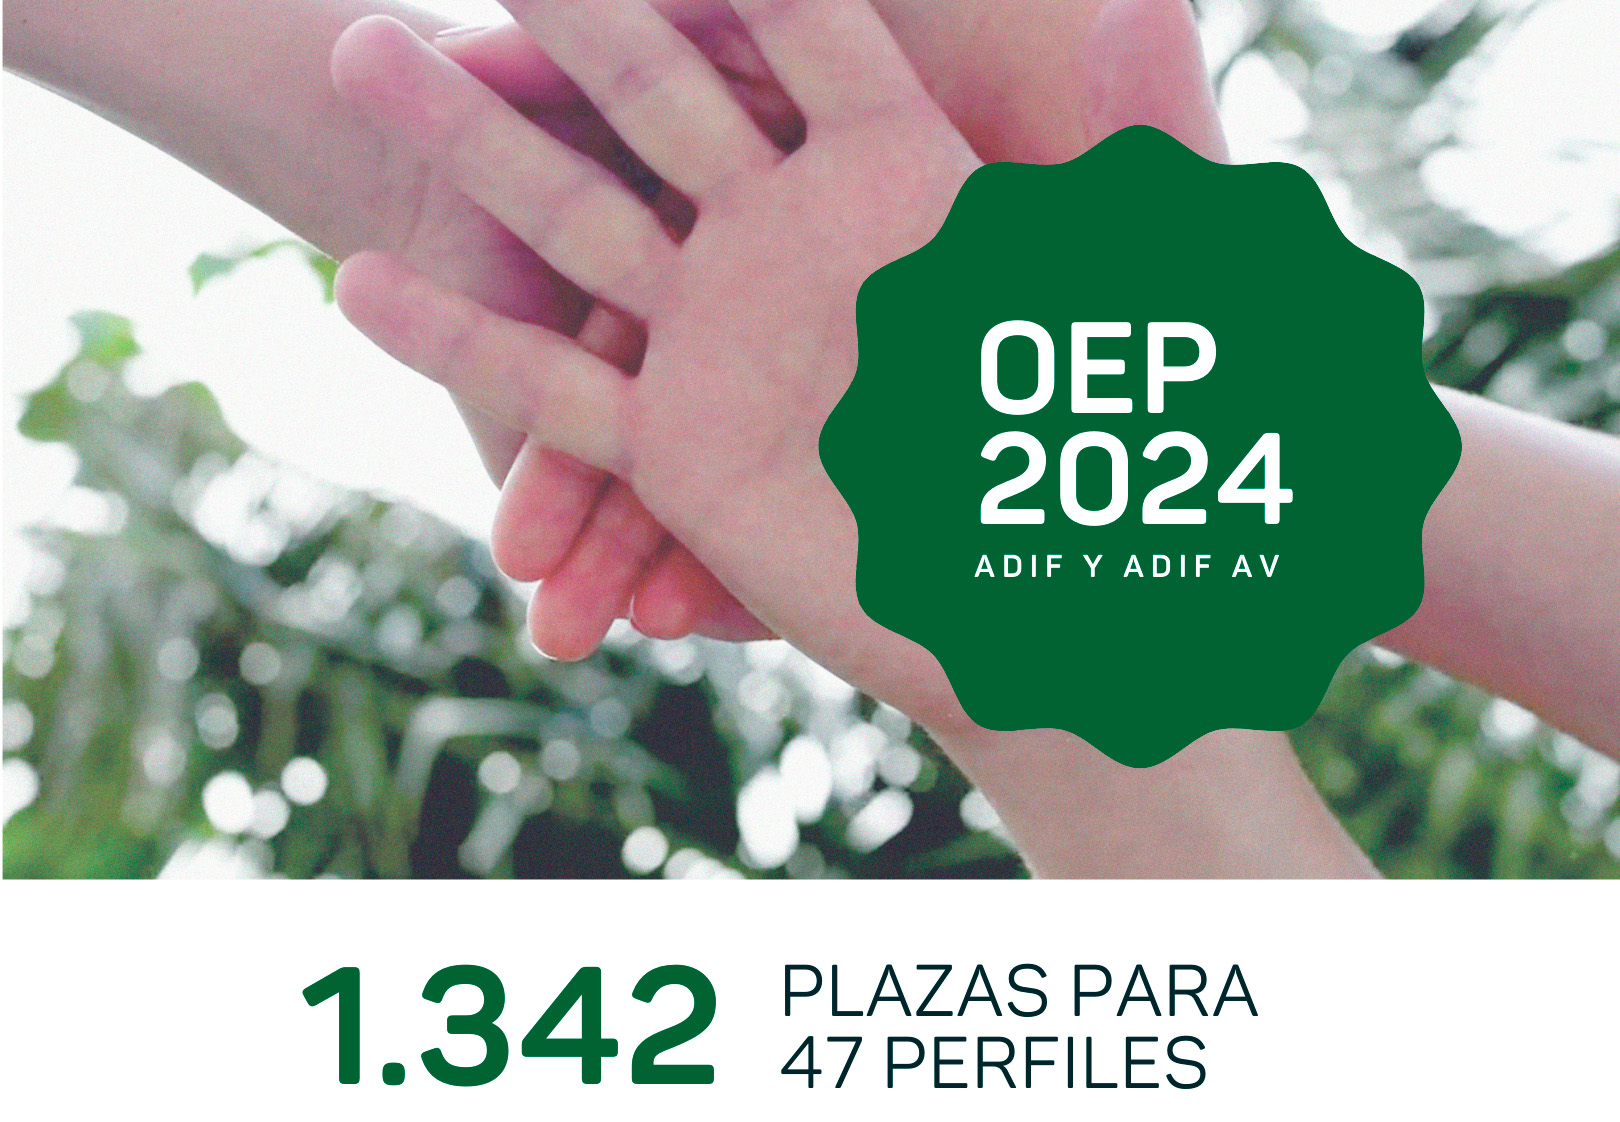 Adif convoca una OEP de 1.342 plazas